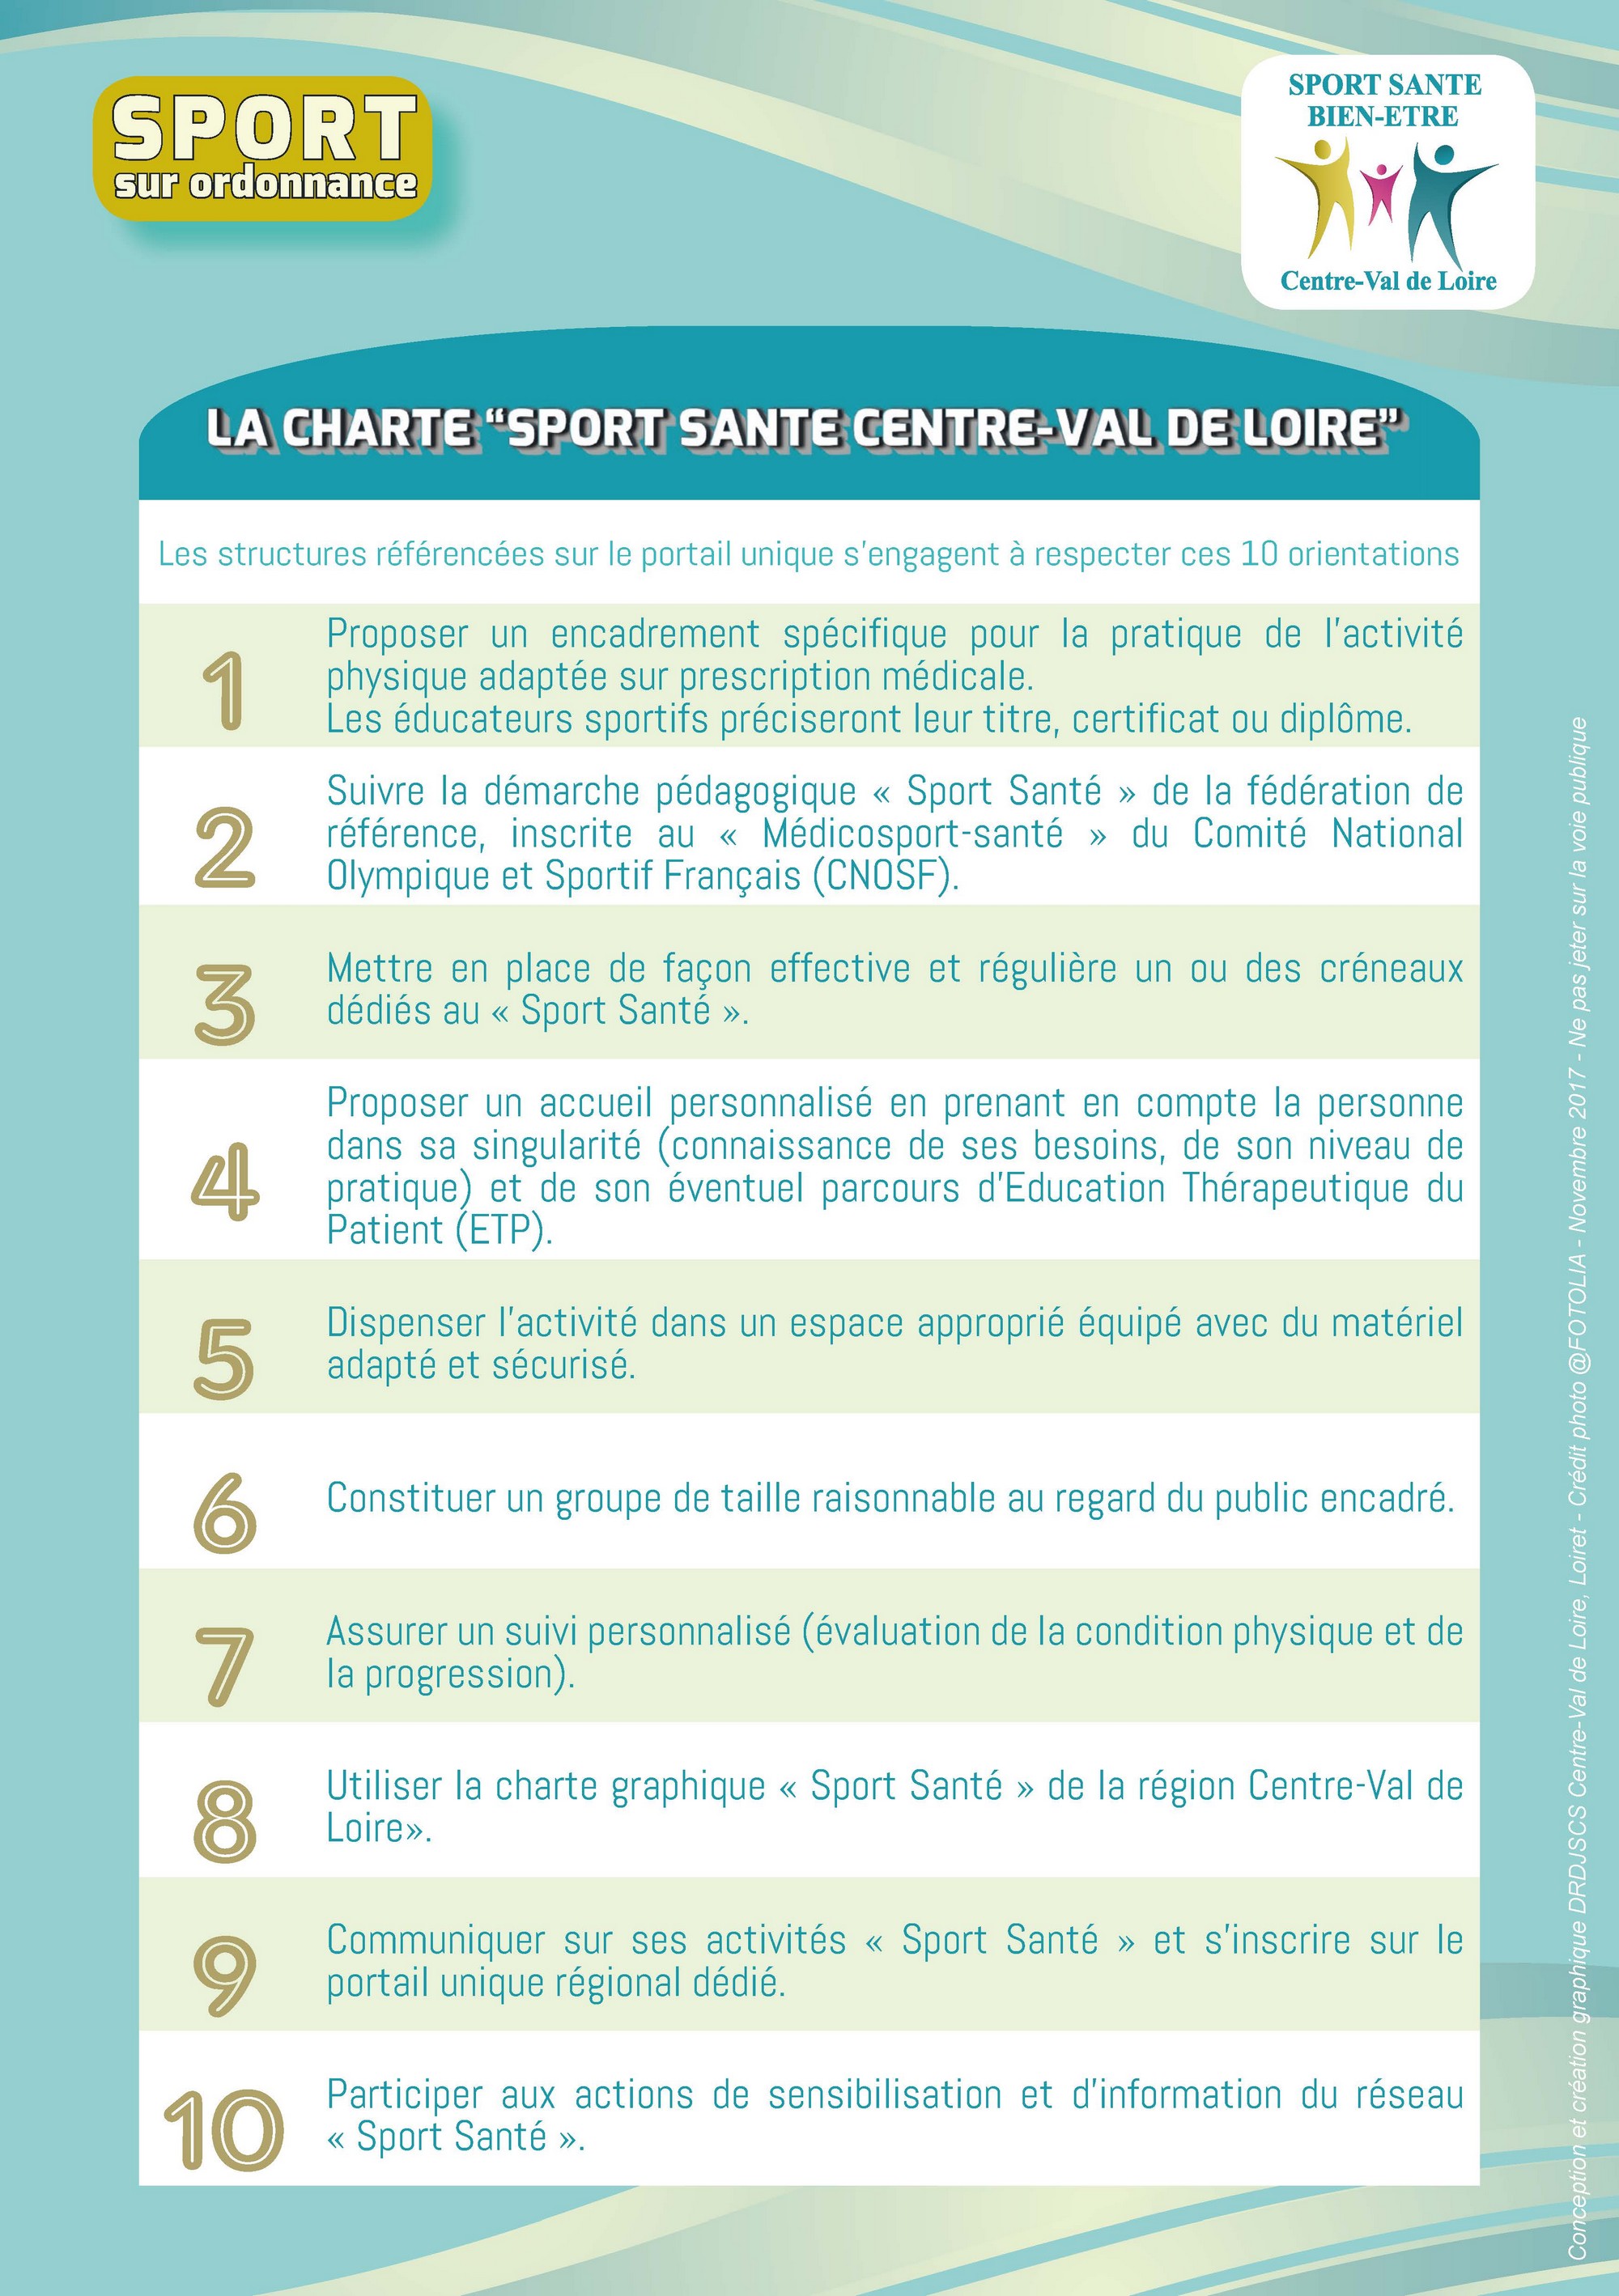 flyer Sport Santé Bien être CVL Page 2 2000